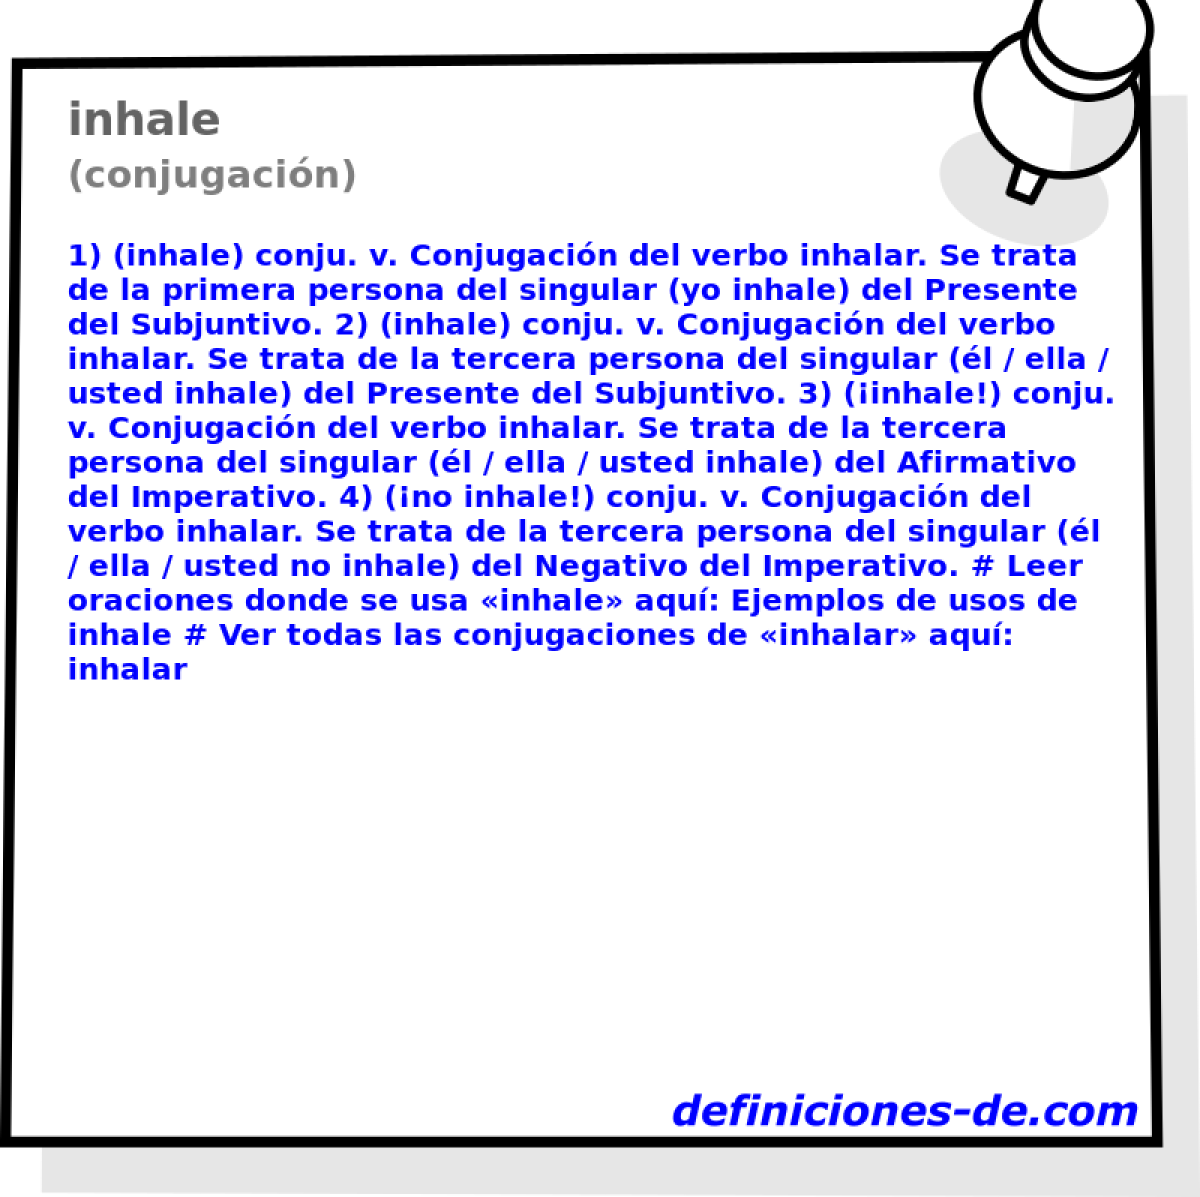 inhale (conjugacin)